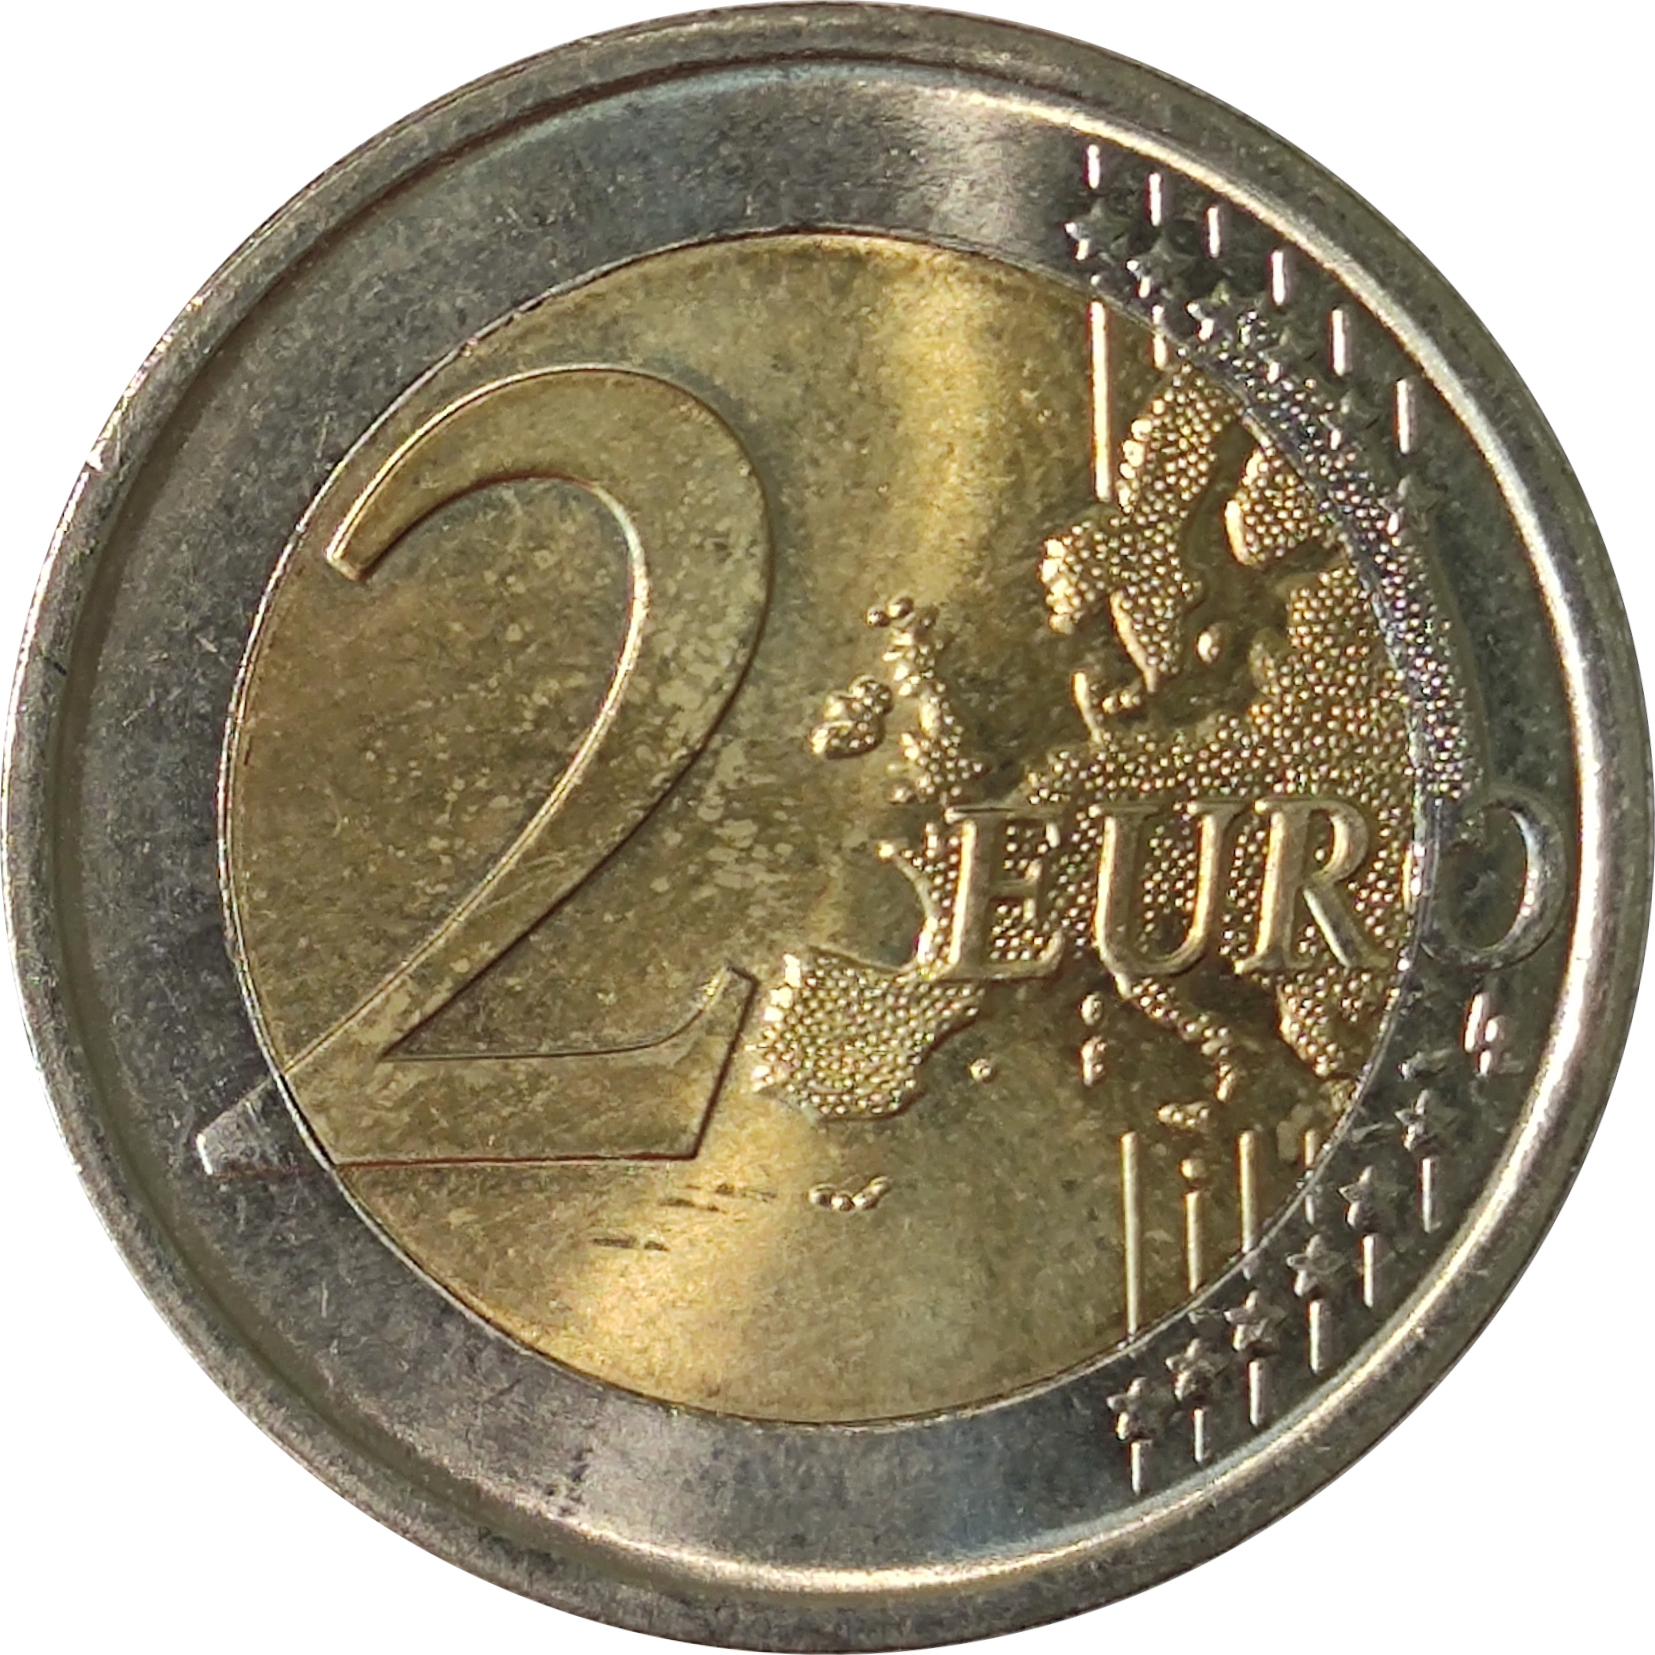 2 euro - Von Suttner